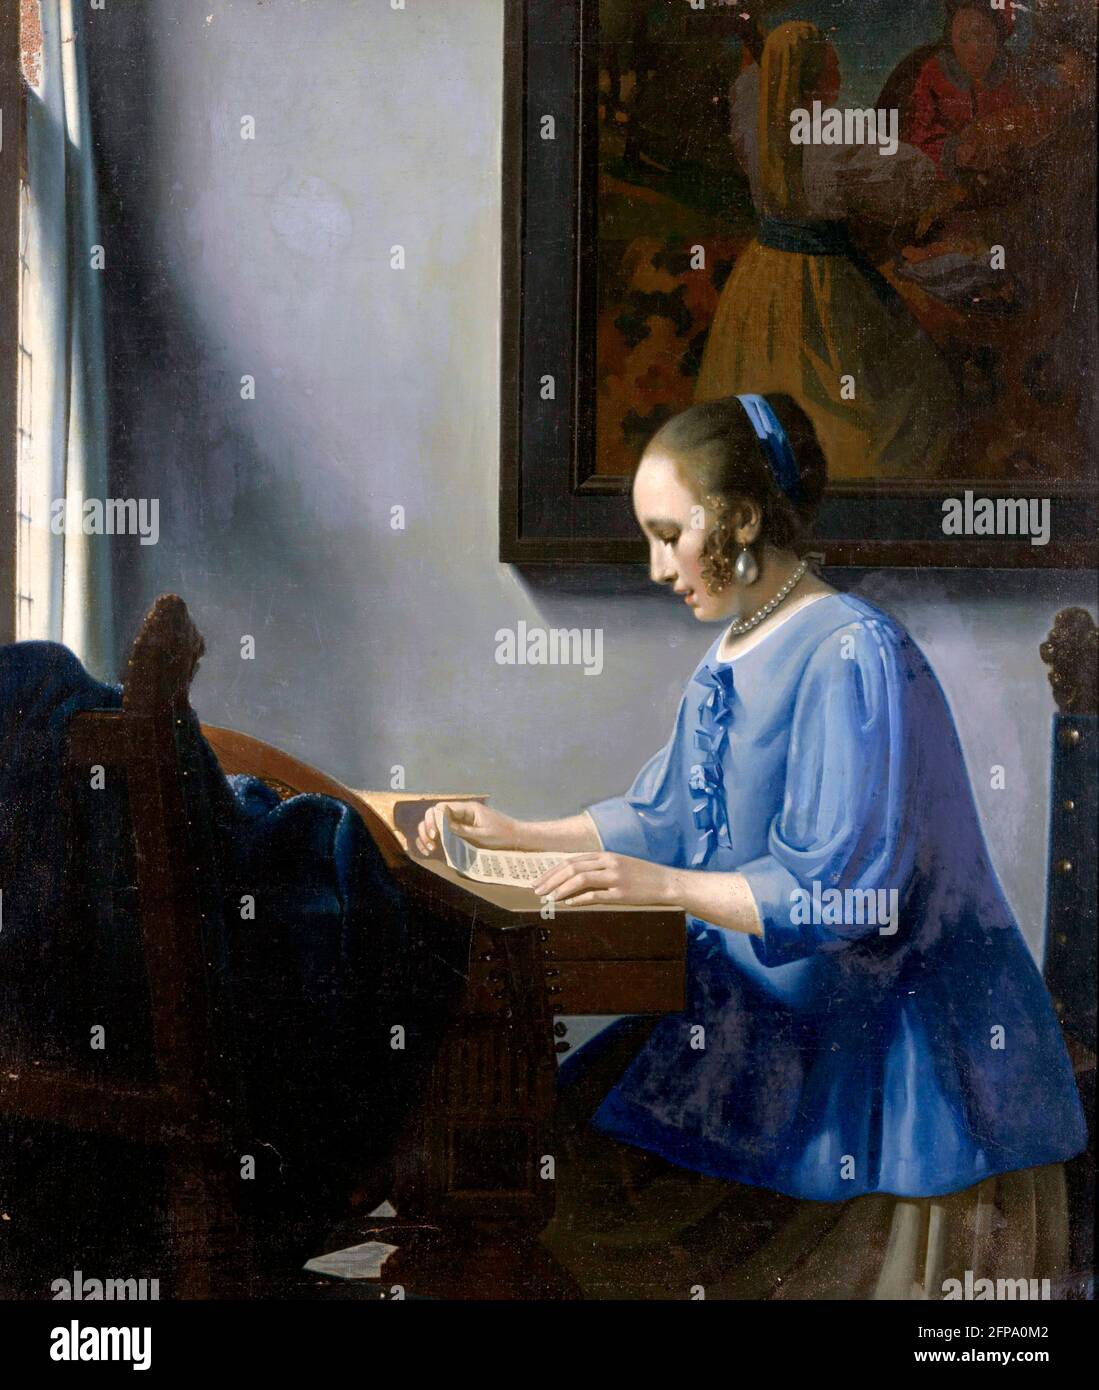 Han van Meegeren.  Muzieklezende Vrouw (Woman Reading Music), a painting in the style of Vermeer by the famous Dutch art forger, Henricus Antonius 'Han' van Meegeren (1889-1947), oil on canvas, 1935-1940 Stock Photo